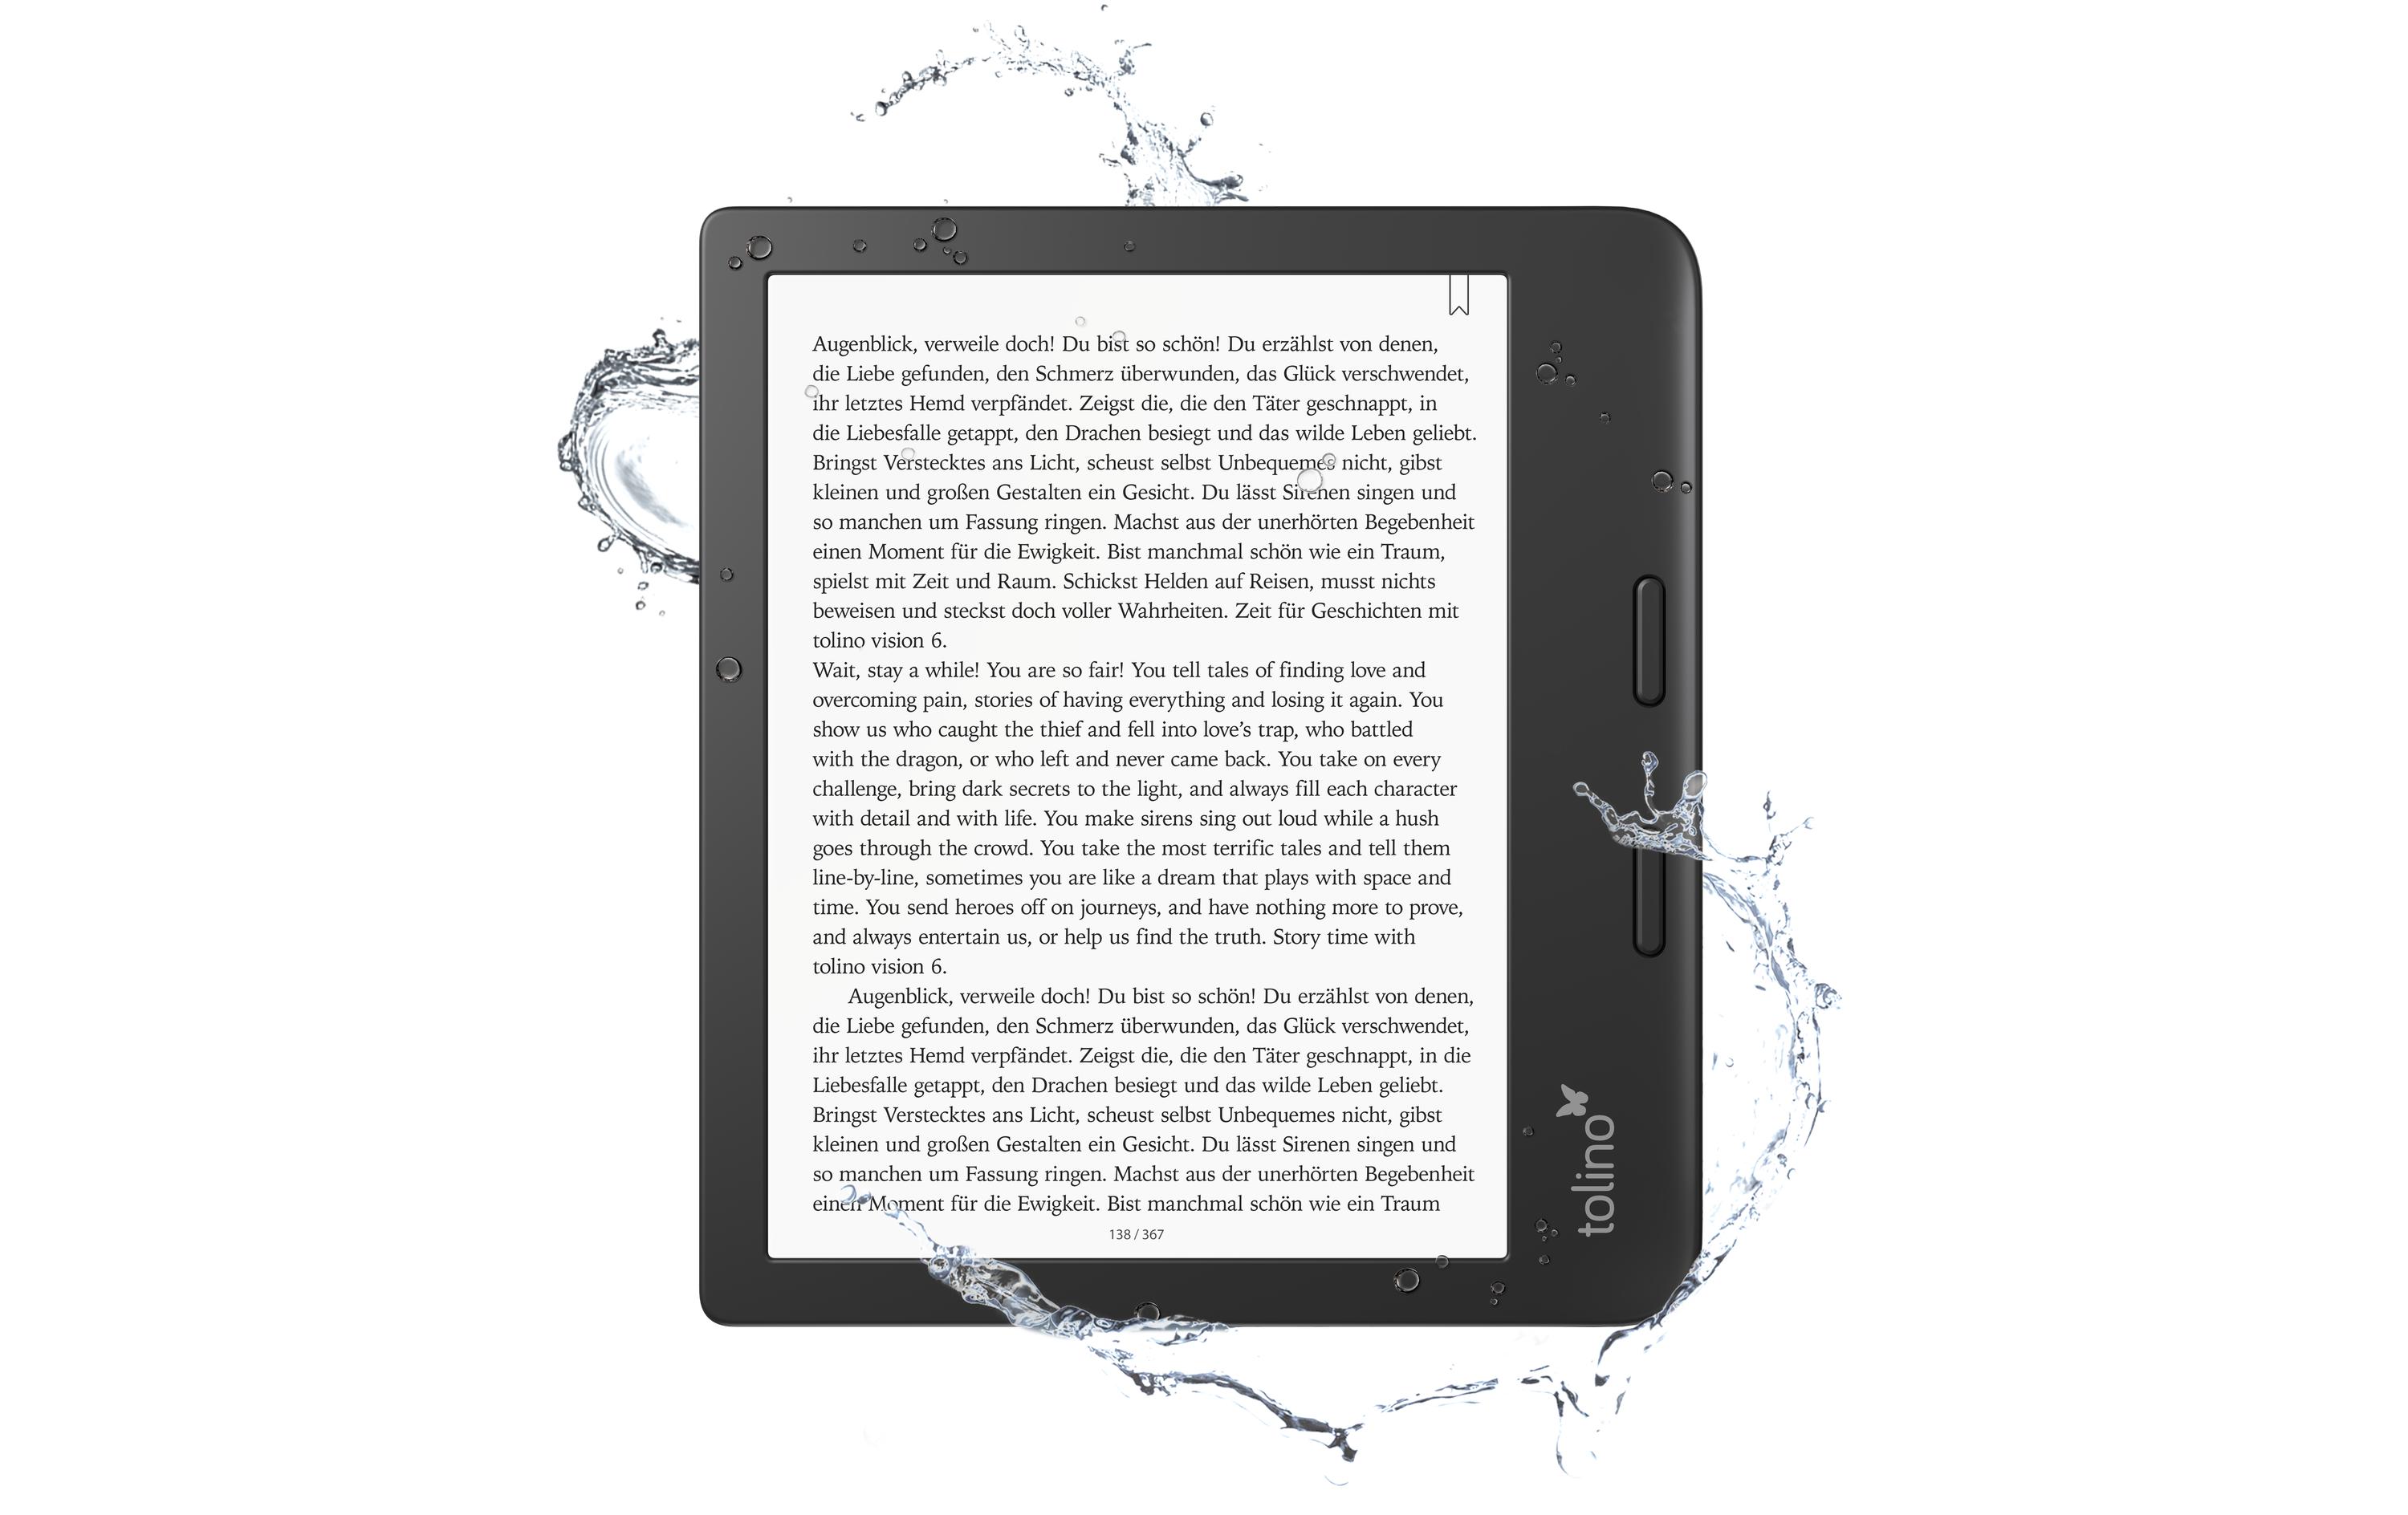 Tolino E-Book Reader Vision 6